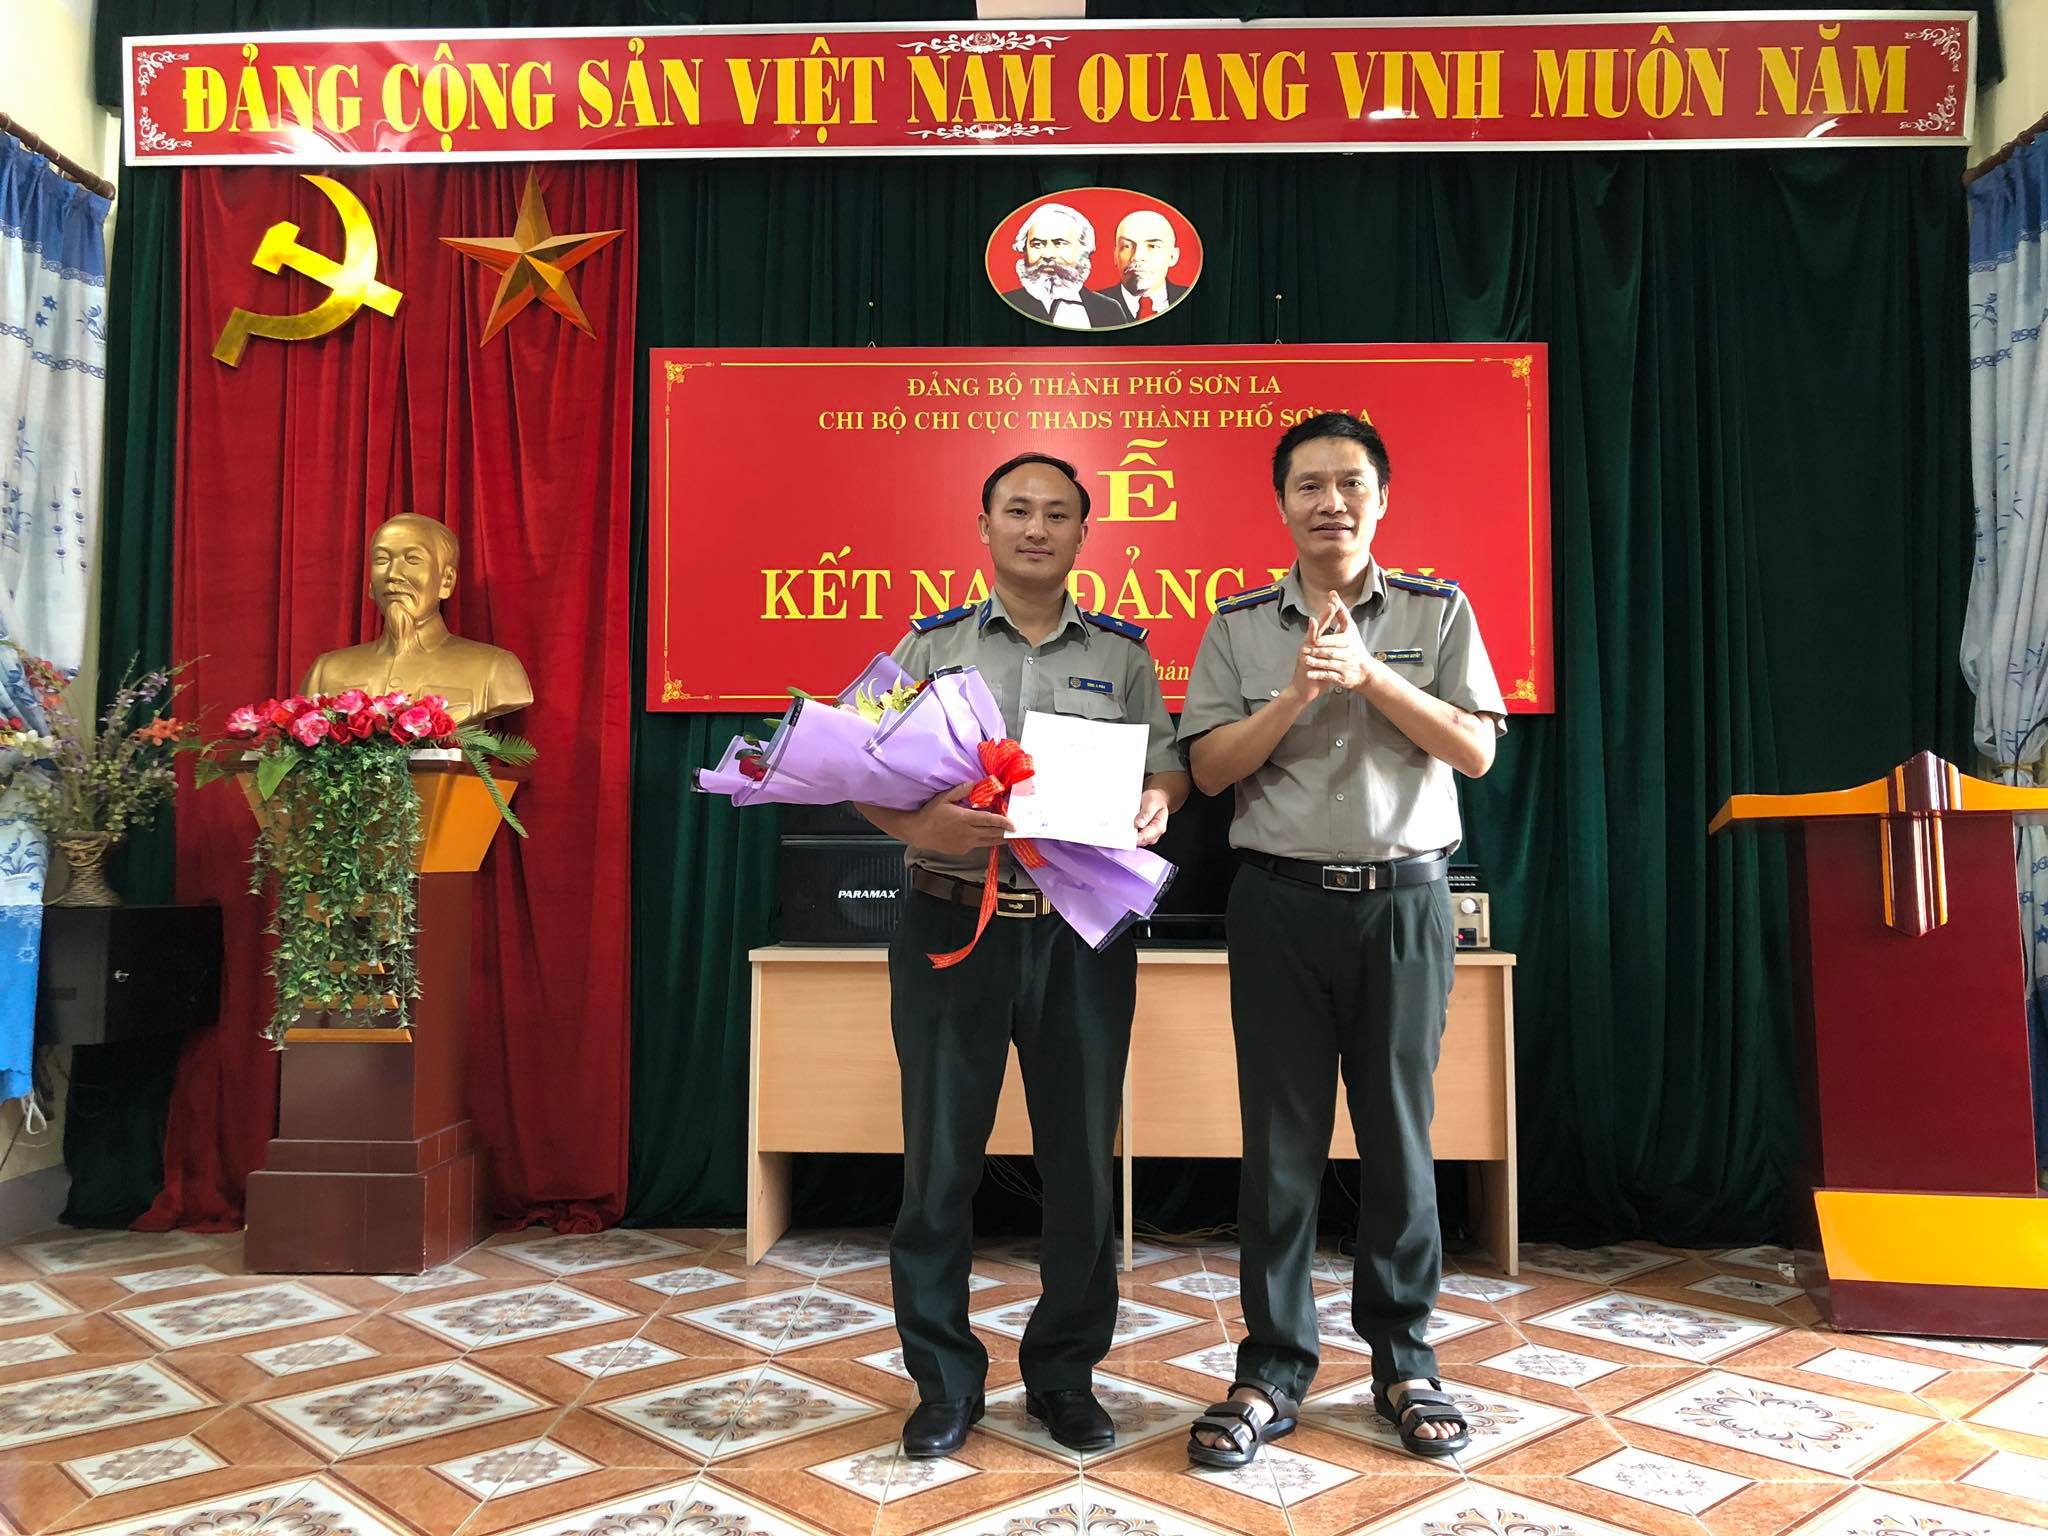 Chi bộ Chi cục THADS thành phố Sơn La tổ chức Lễ kết nạp đảng viên